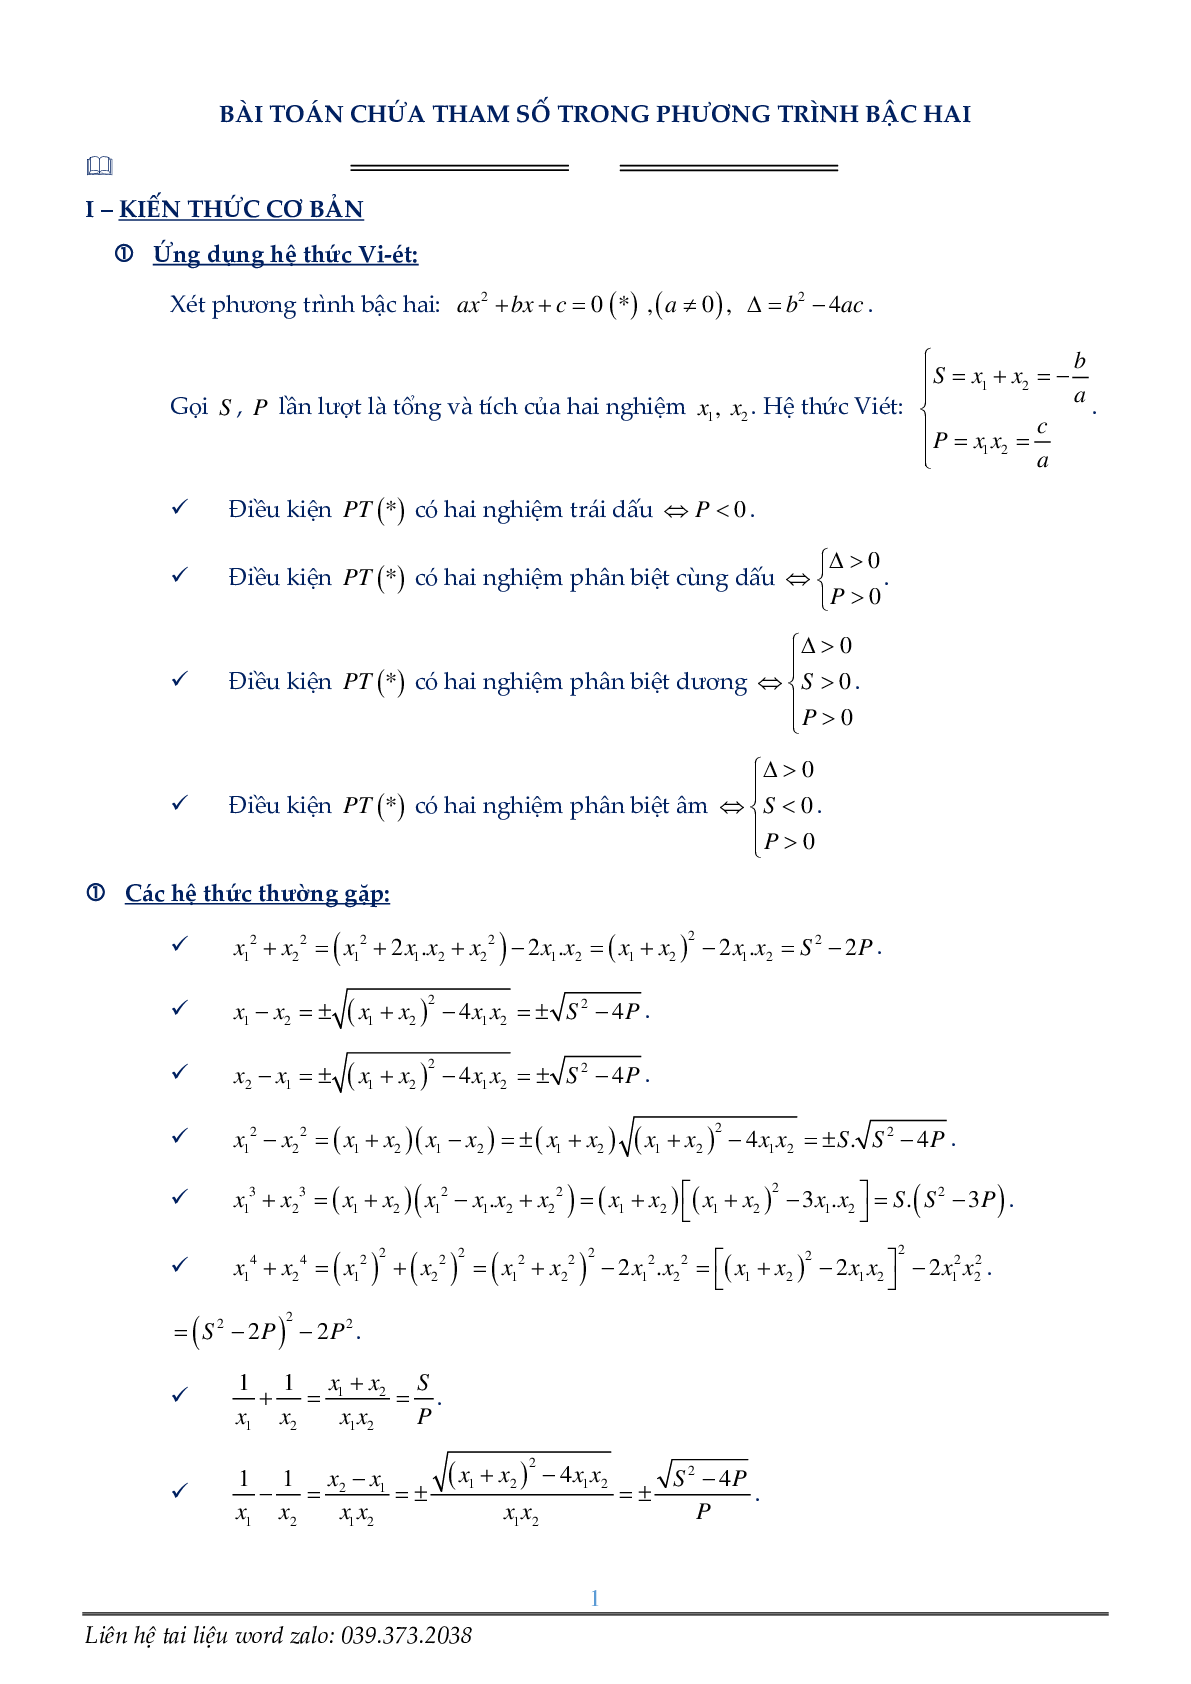 Phương trình chứa tham số (trang 1)